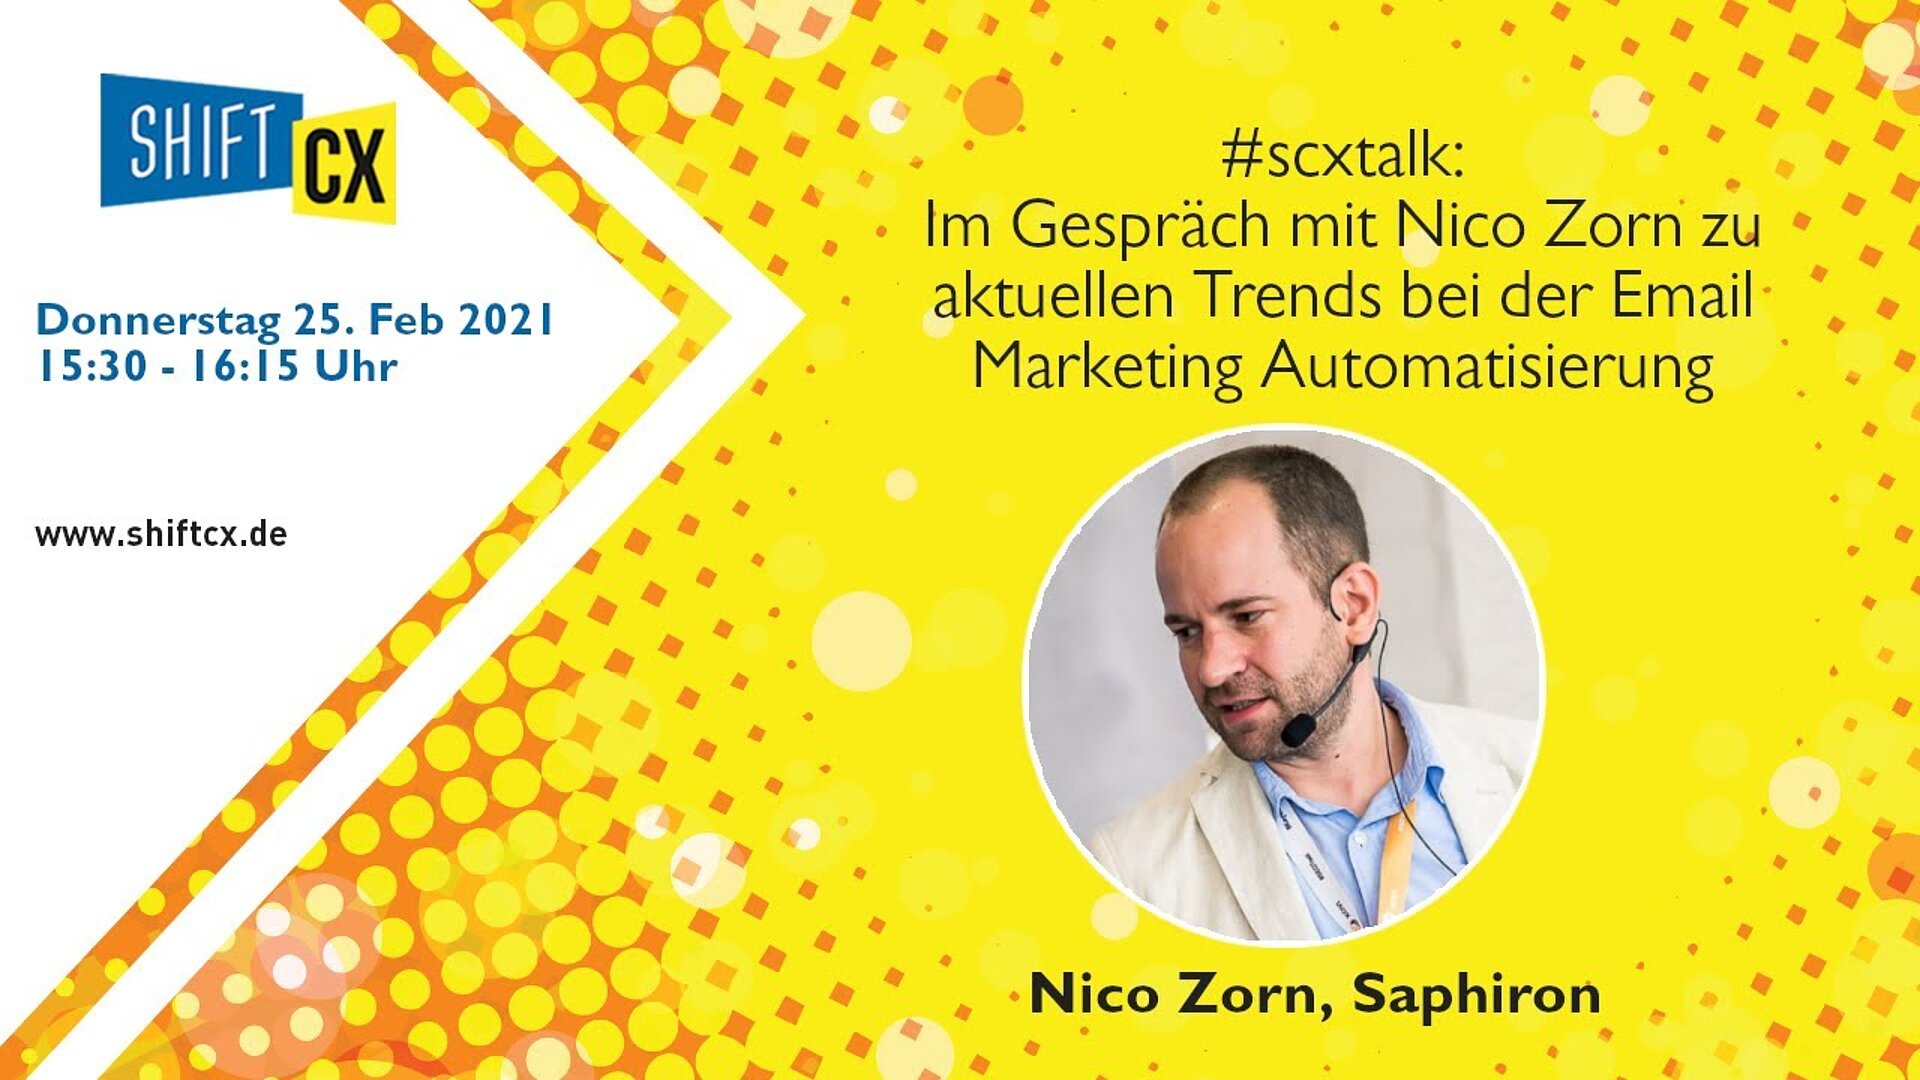 Im Gespräch mit Nico Zorn zu aktuellen Trends bei der Email Marketing Automatisierung